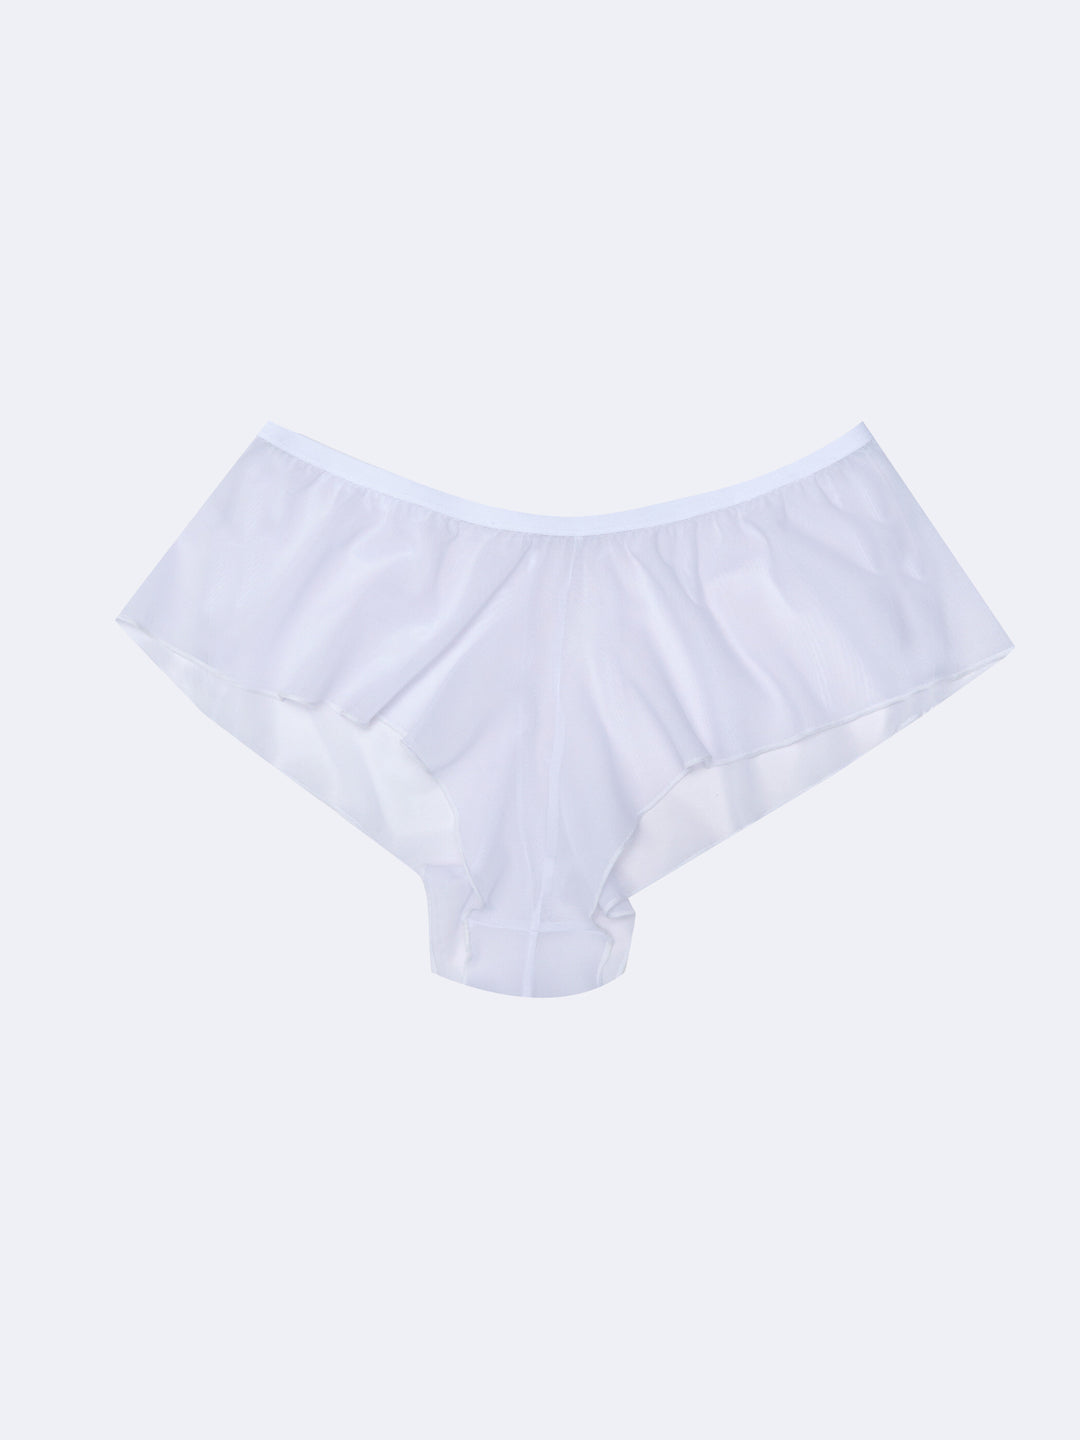 Underwear - Knicker LC Waikiki, Moudda Tunisie S2HI34Z8